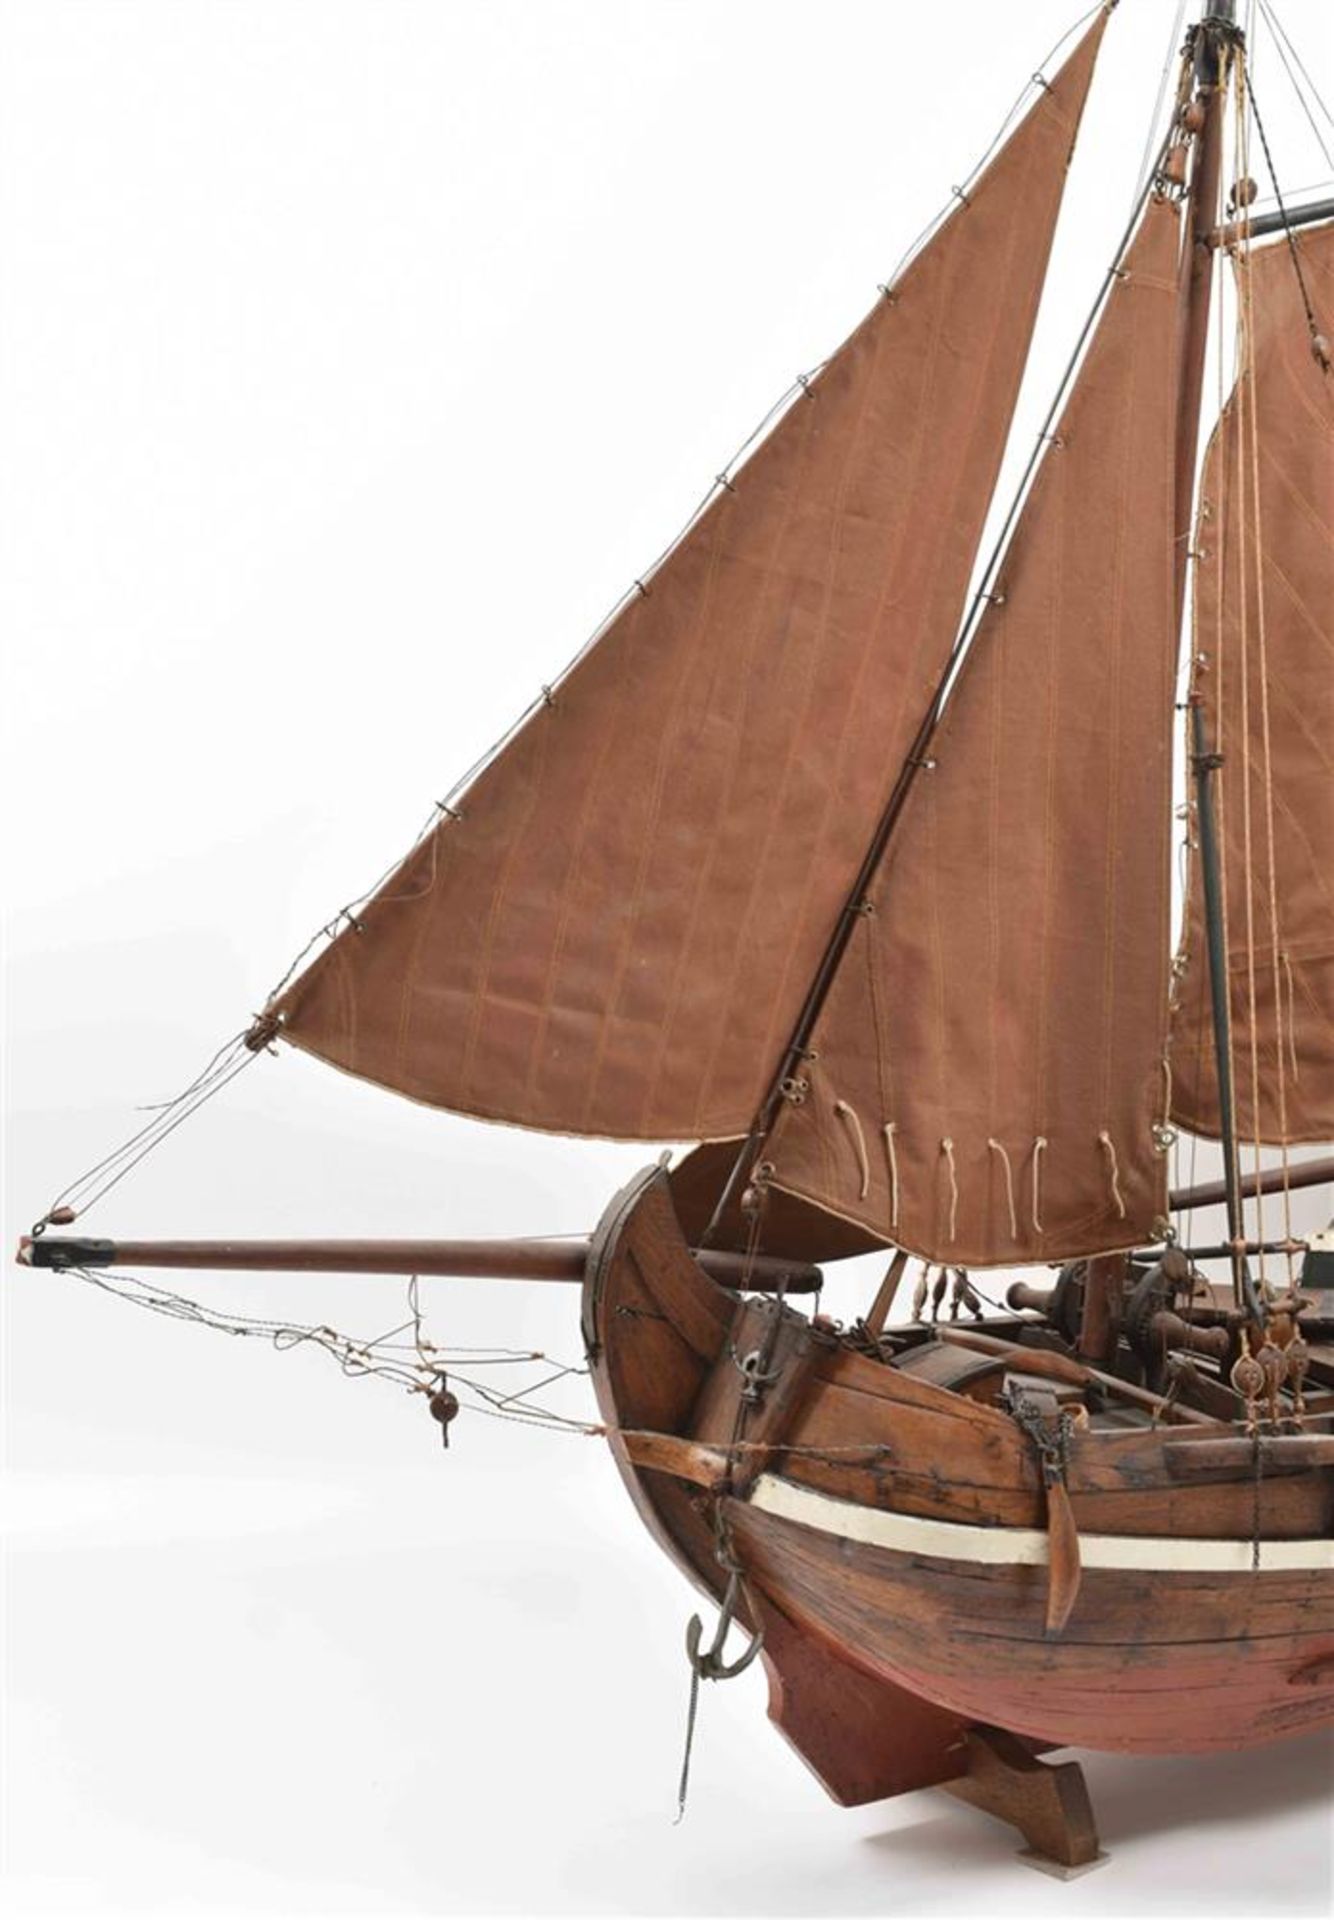 [Model ships] Botter fishing vessel model - Image 2 of 5